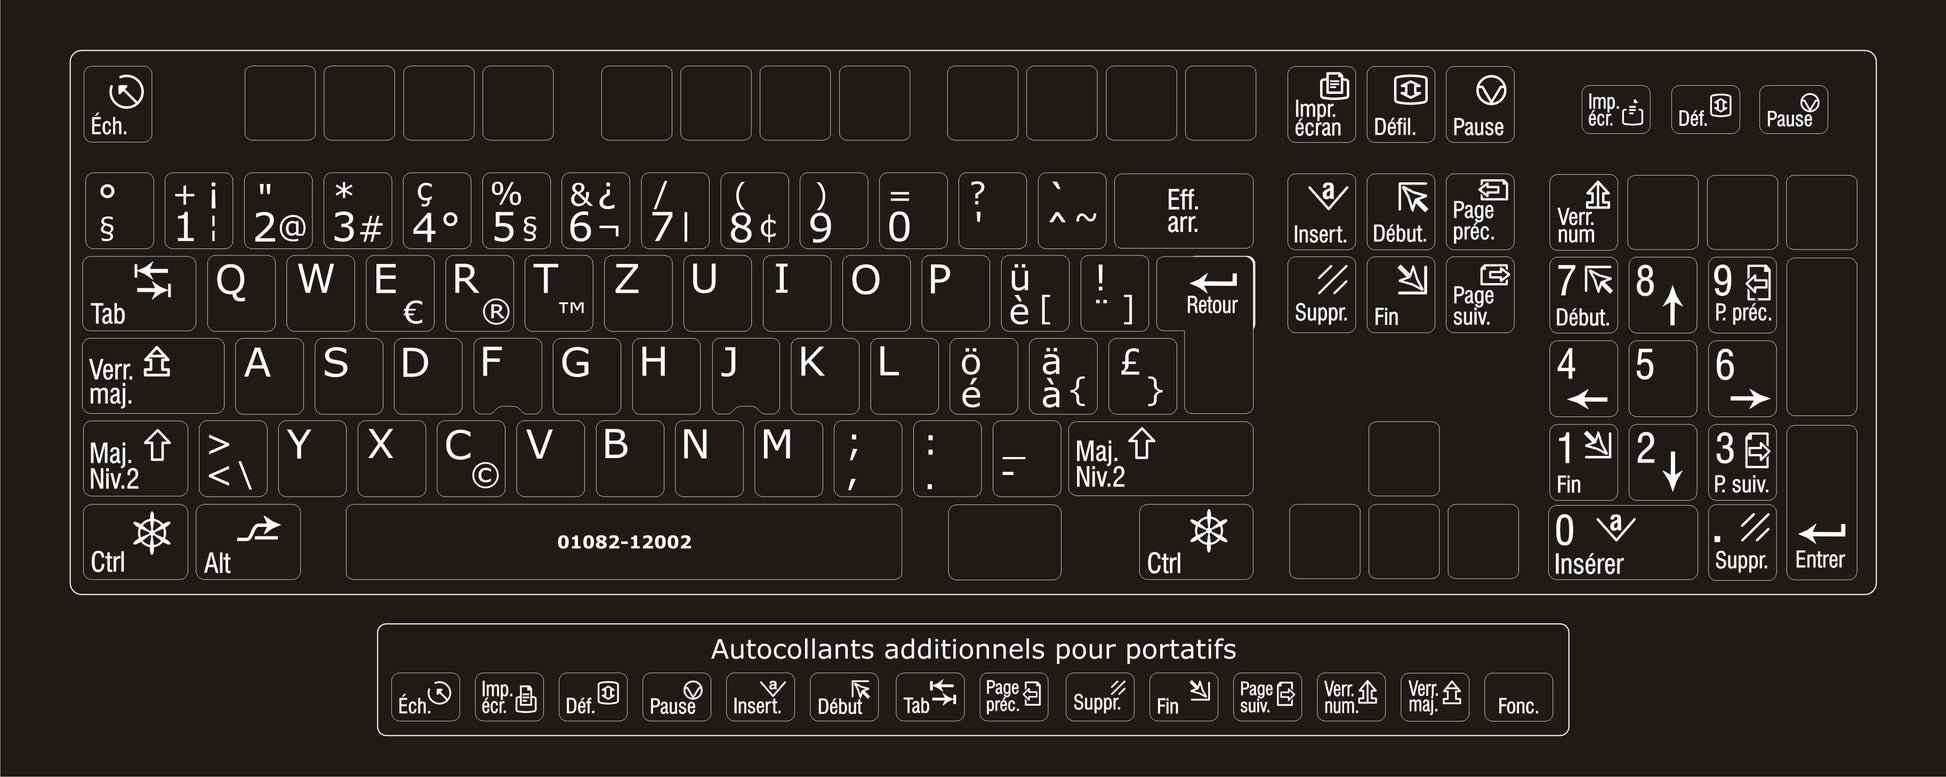 Autocollants clavier complet Windows français (Suisse) fonctions francaises 01082-12002